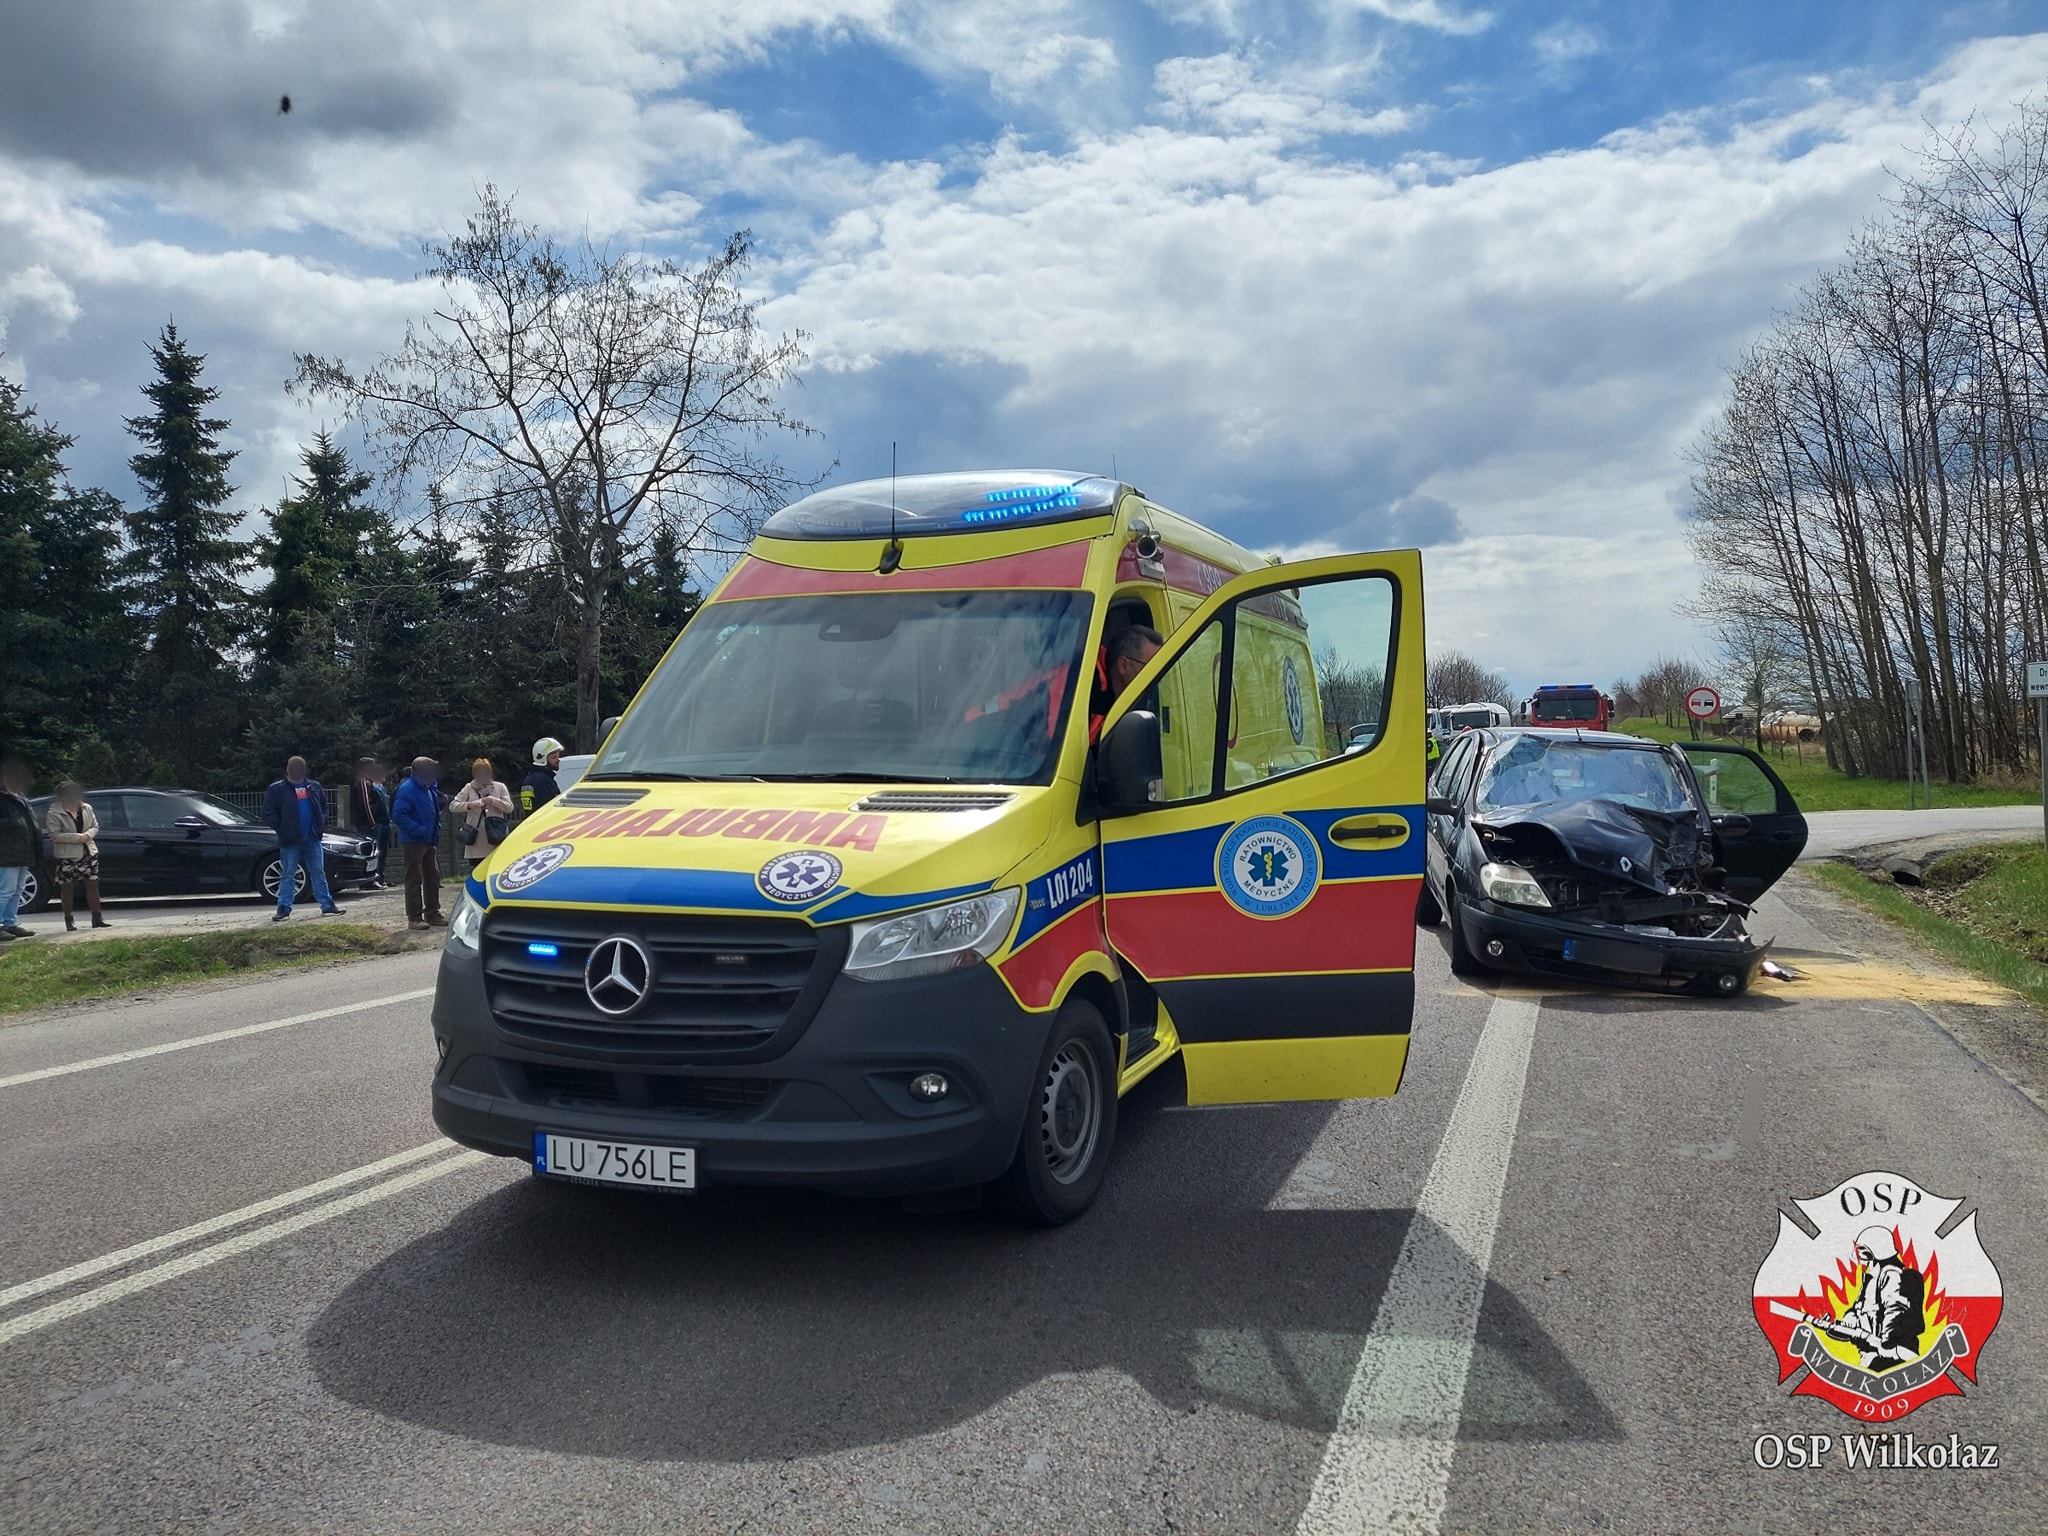 Cztery osoby poszkodowane po zderzeniu dwóch pojazdów na trasie Lublin – Kraśnik (zdjęcia)